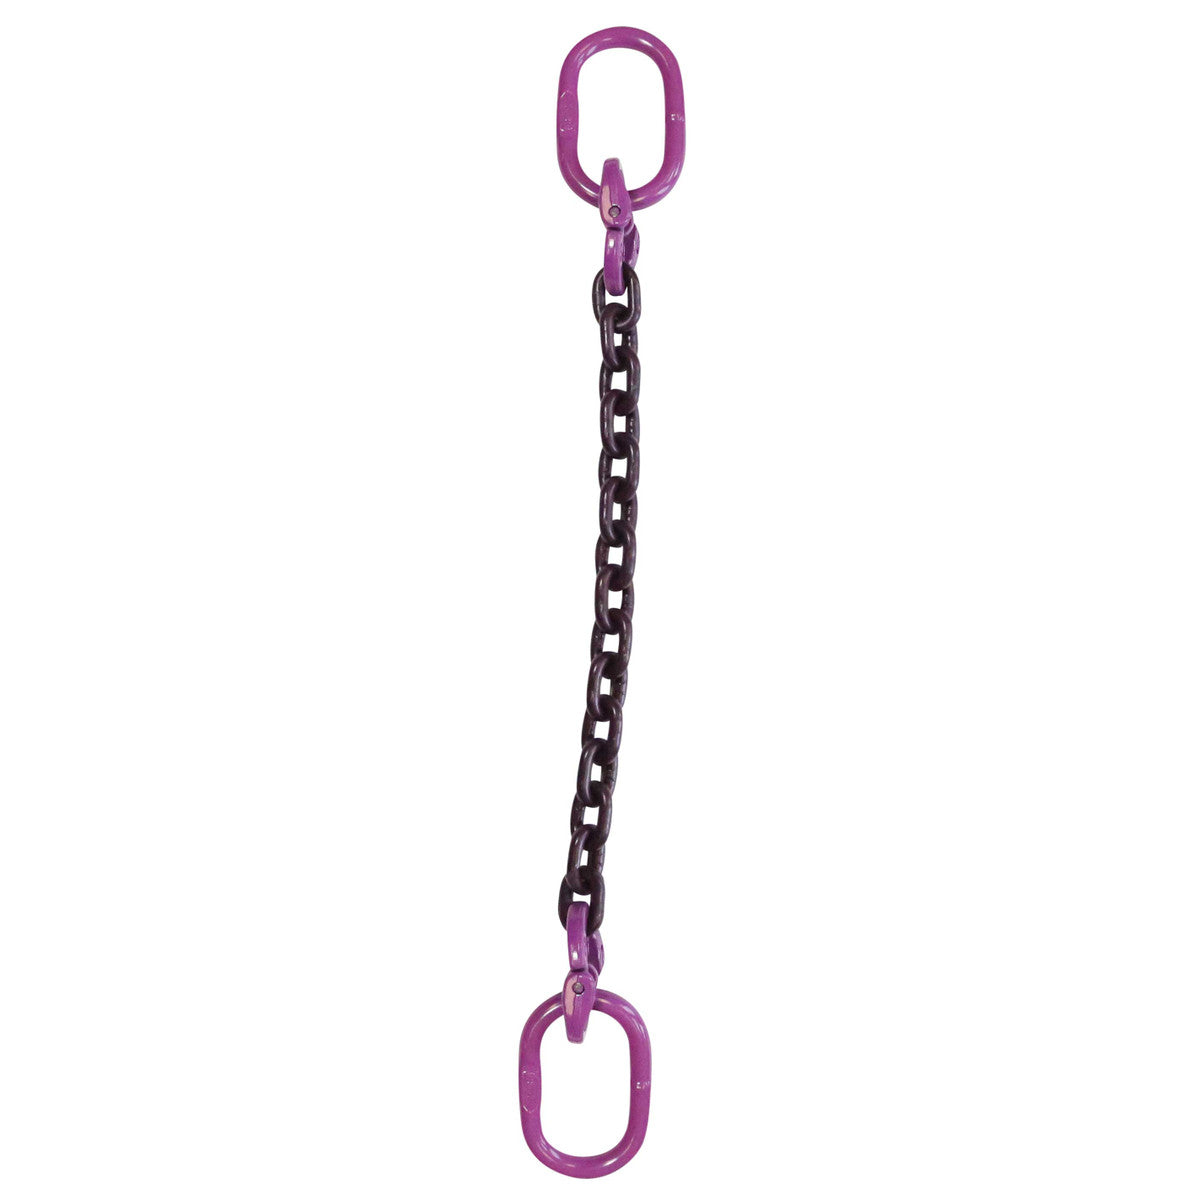 9/32" x 10' - Single Leg Chain Sling w/ Oblong Master Links  - Grade 100